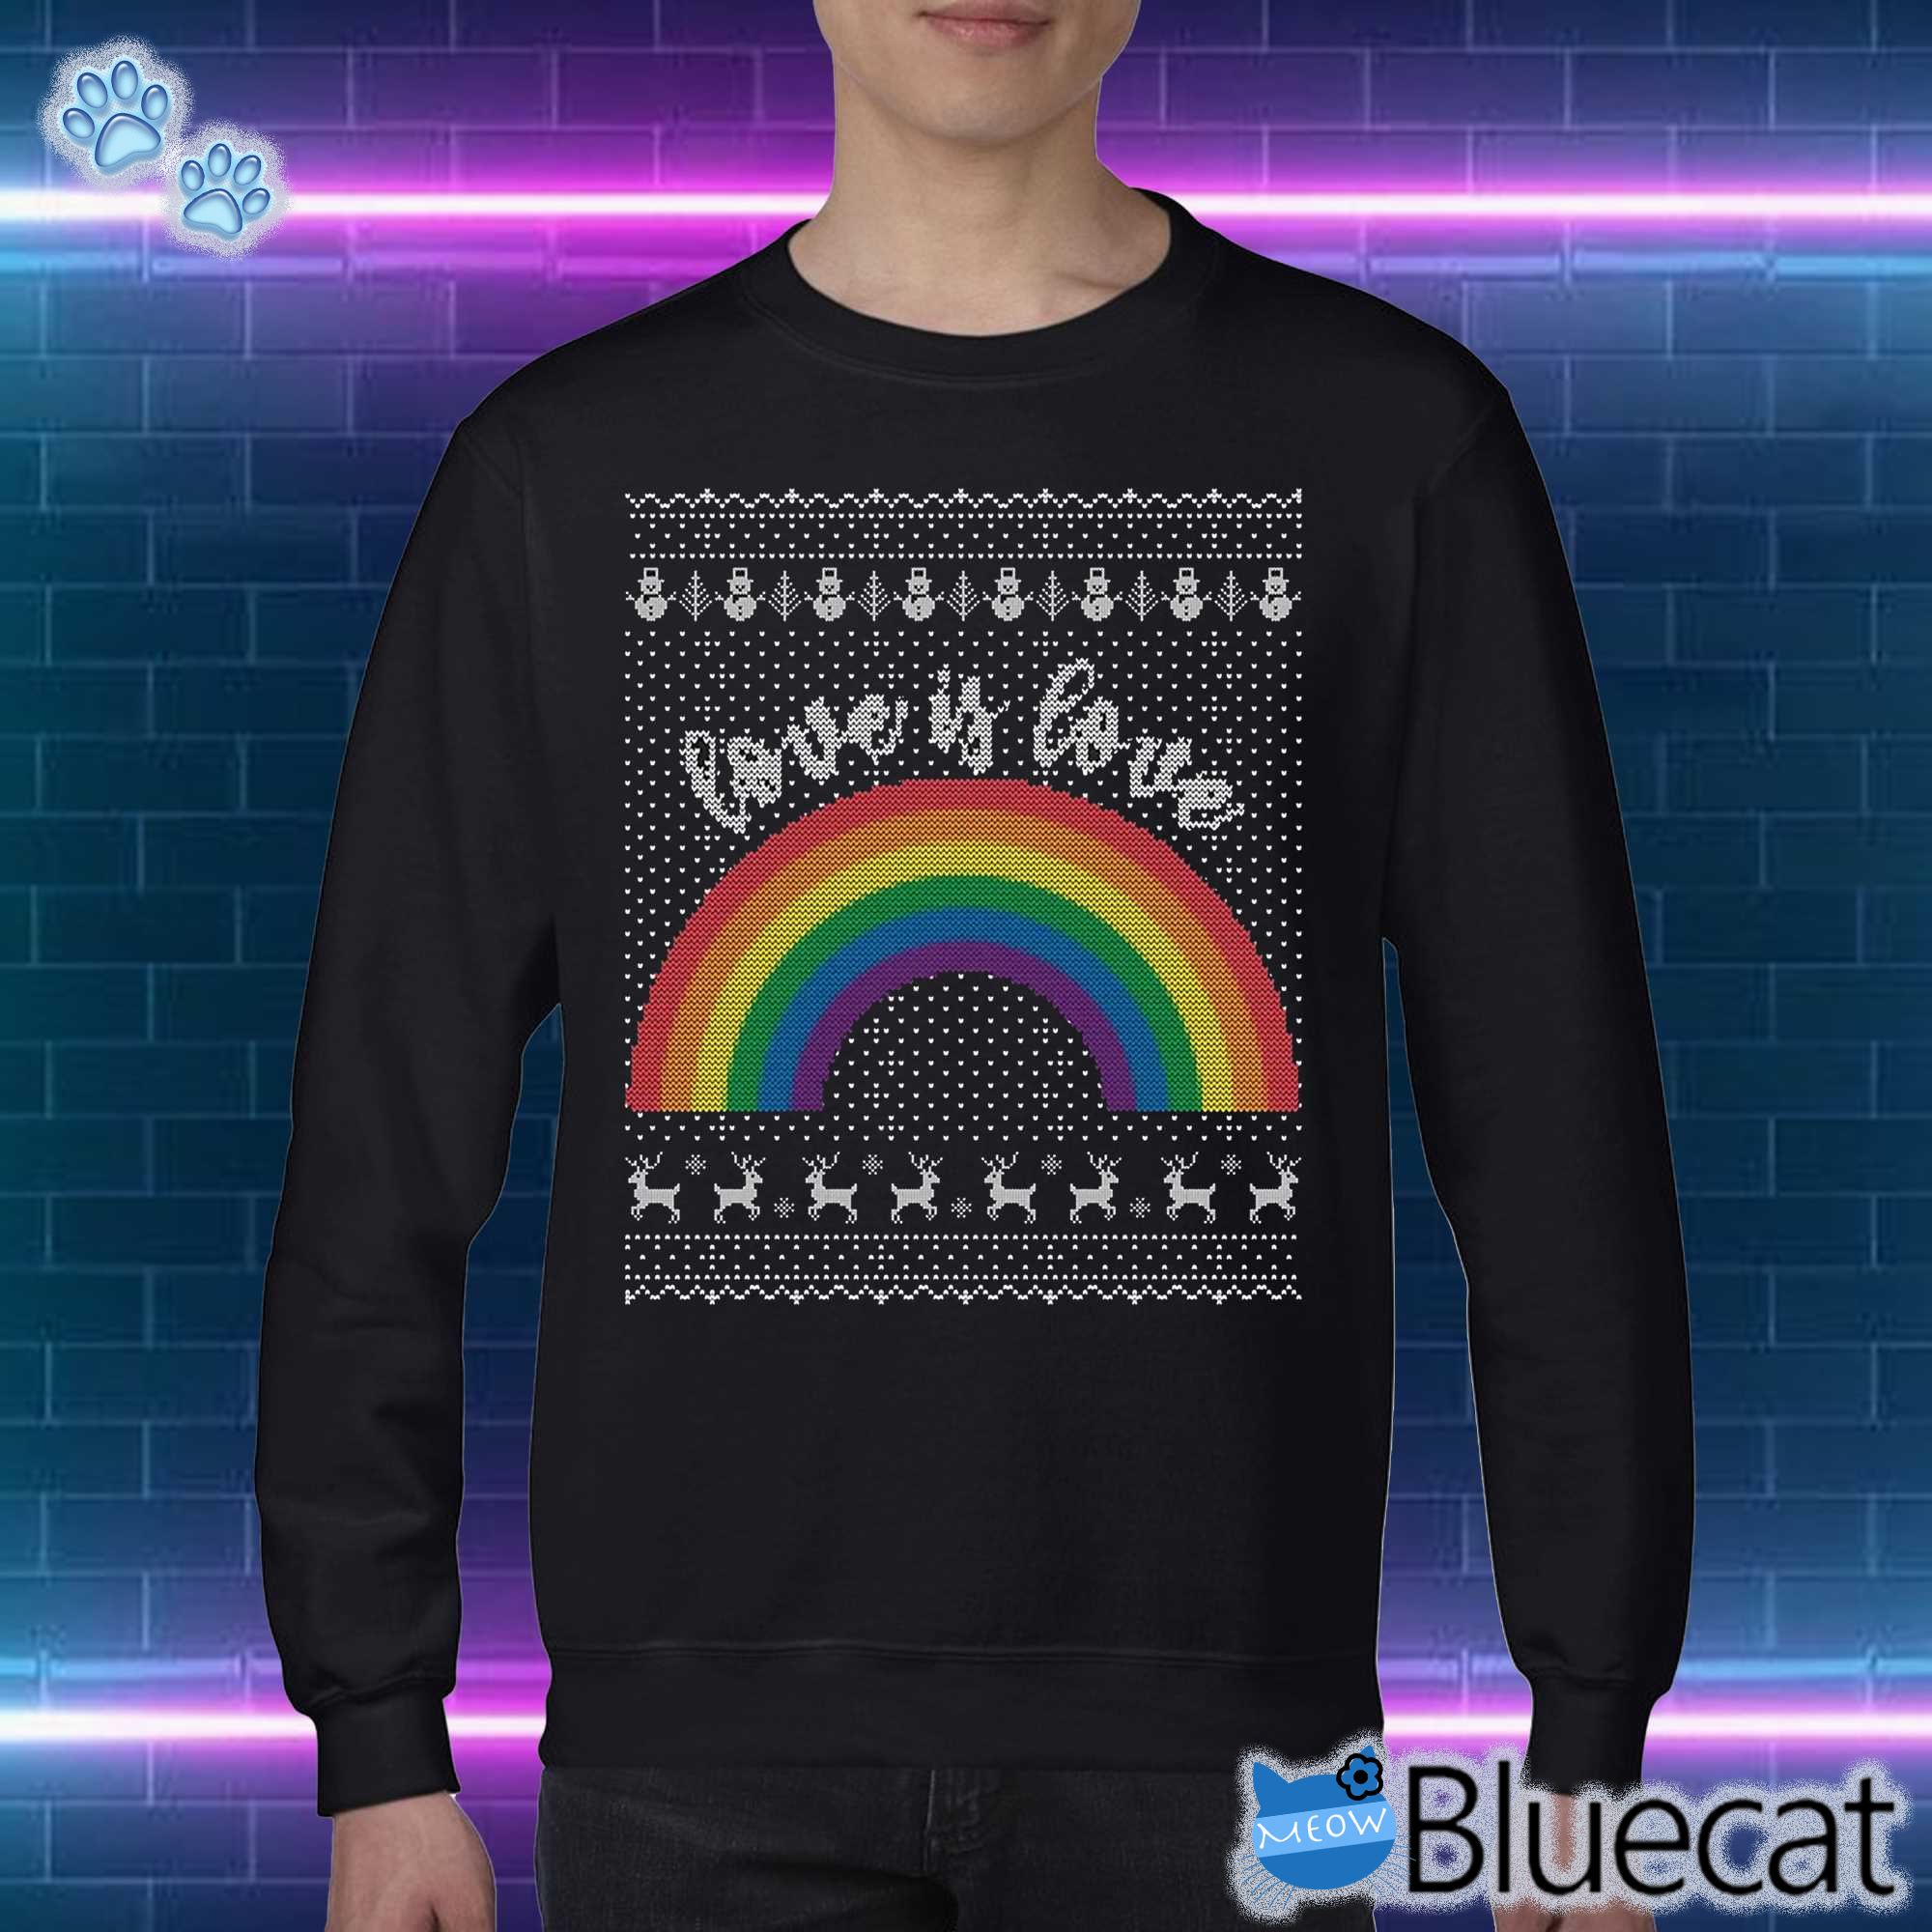 Love Is Love Pride Sweatshirt Ugly Christmas Sweater Lgbt Gay Pride T-shirt 